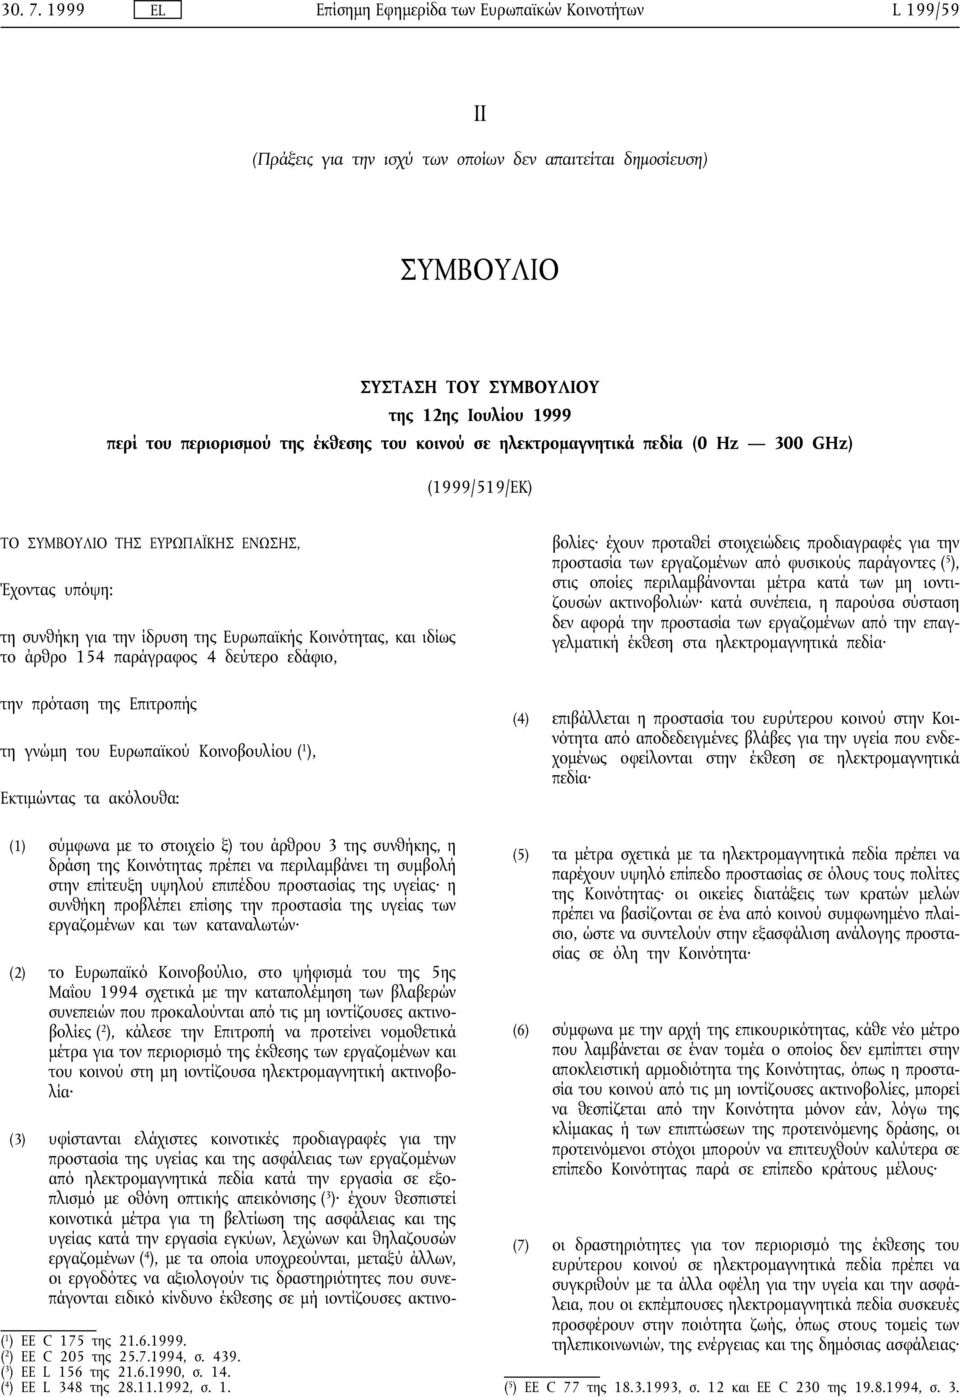 έκθεσης του κοινού σε ηλεκτροµαγνητικά πεδία (0 Hz 300 GHz) (1999/519/ΕΚ) ΤΟ ΥΜΒΟΥΛΙΟ ΤΗ ΕΥΡΩΠΑΪΚΗ ΕΝΩΗ, Έχοντας υπόψη: τη συνθήκη για την ίδρυση της Ευρωπαϊκής Κοινότητας, και ιδίως το άρθρο 154